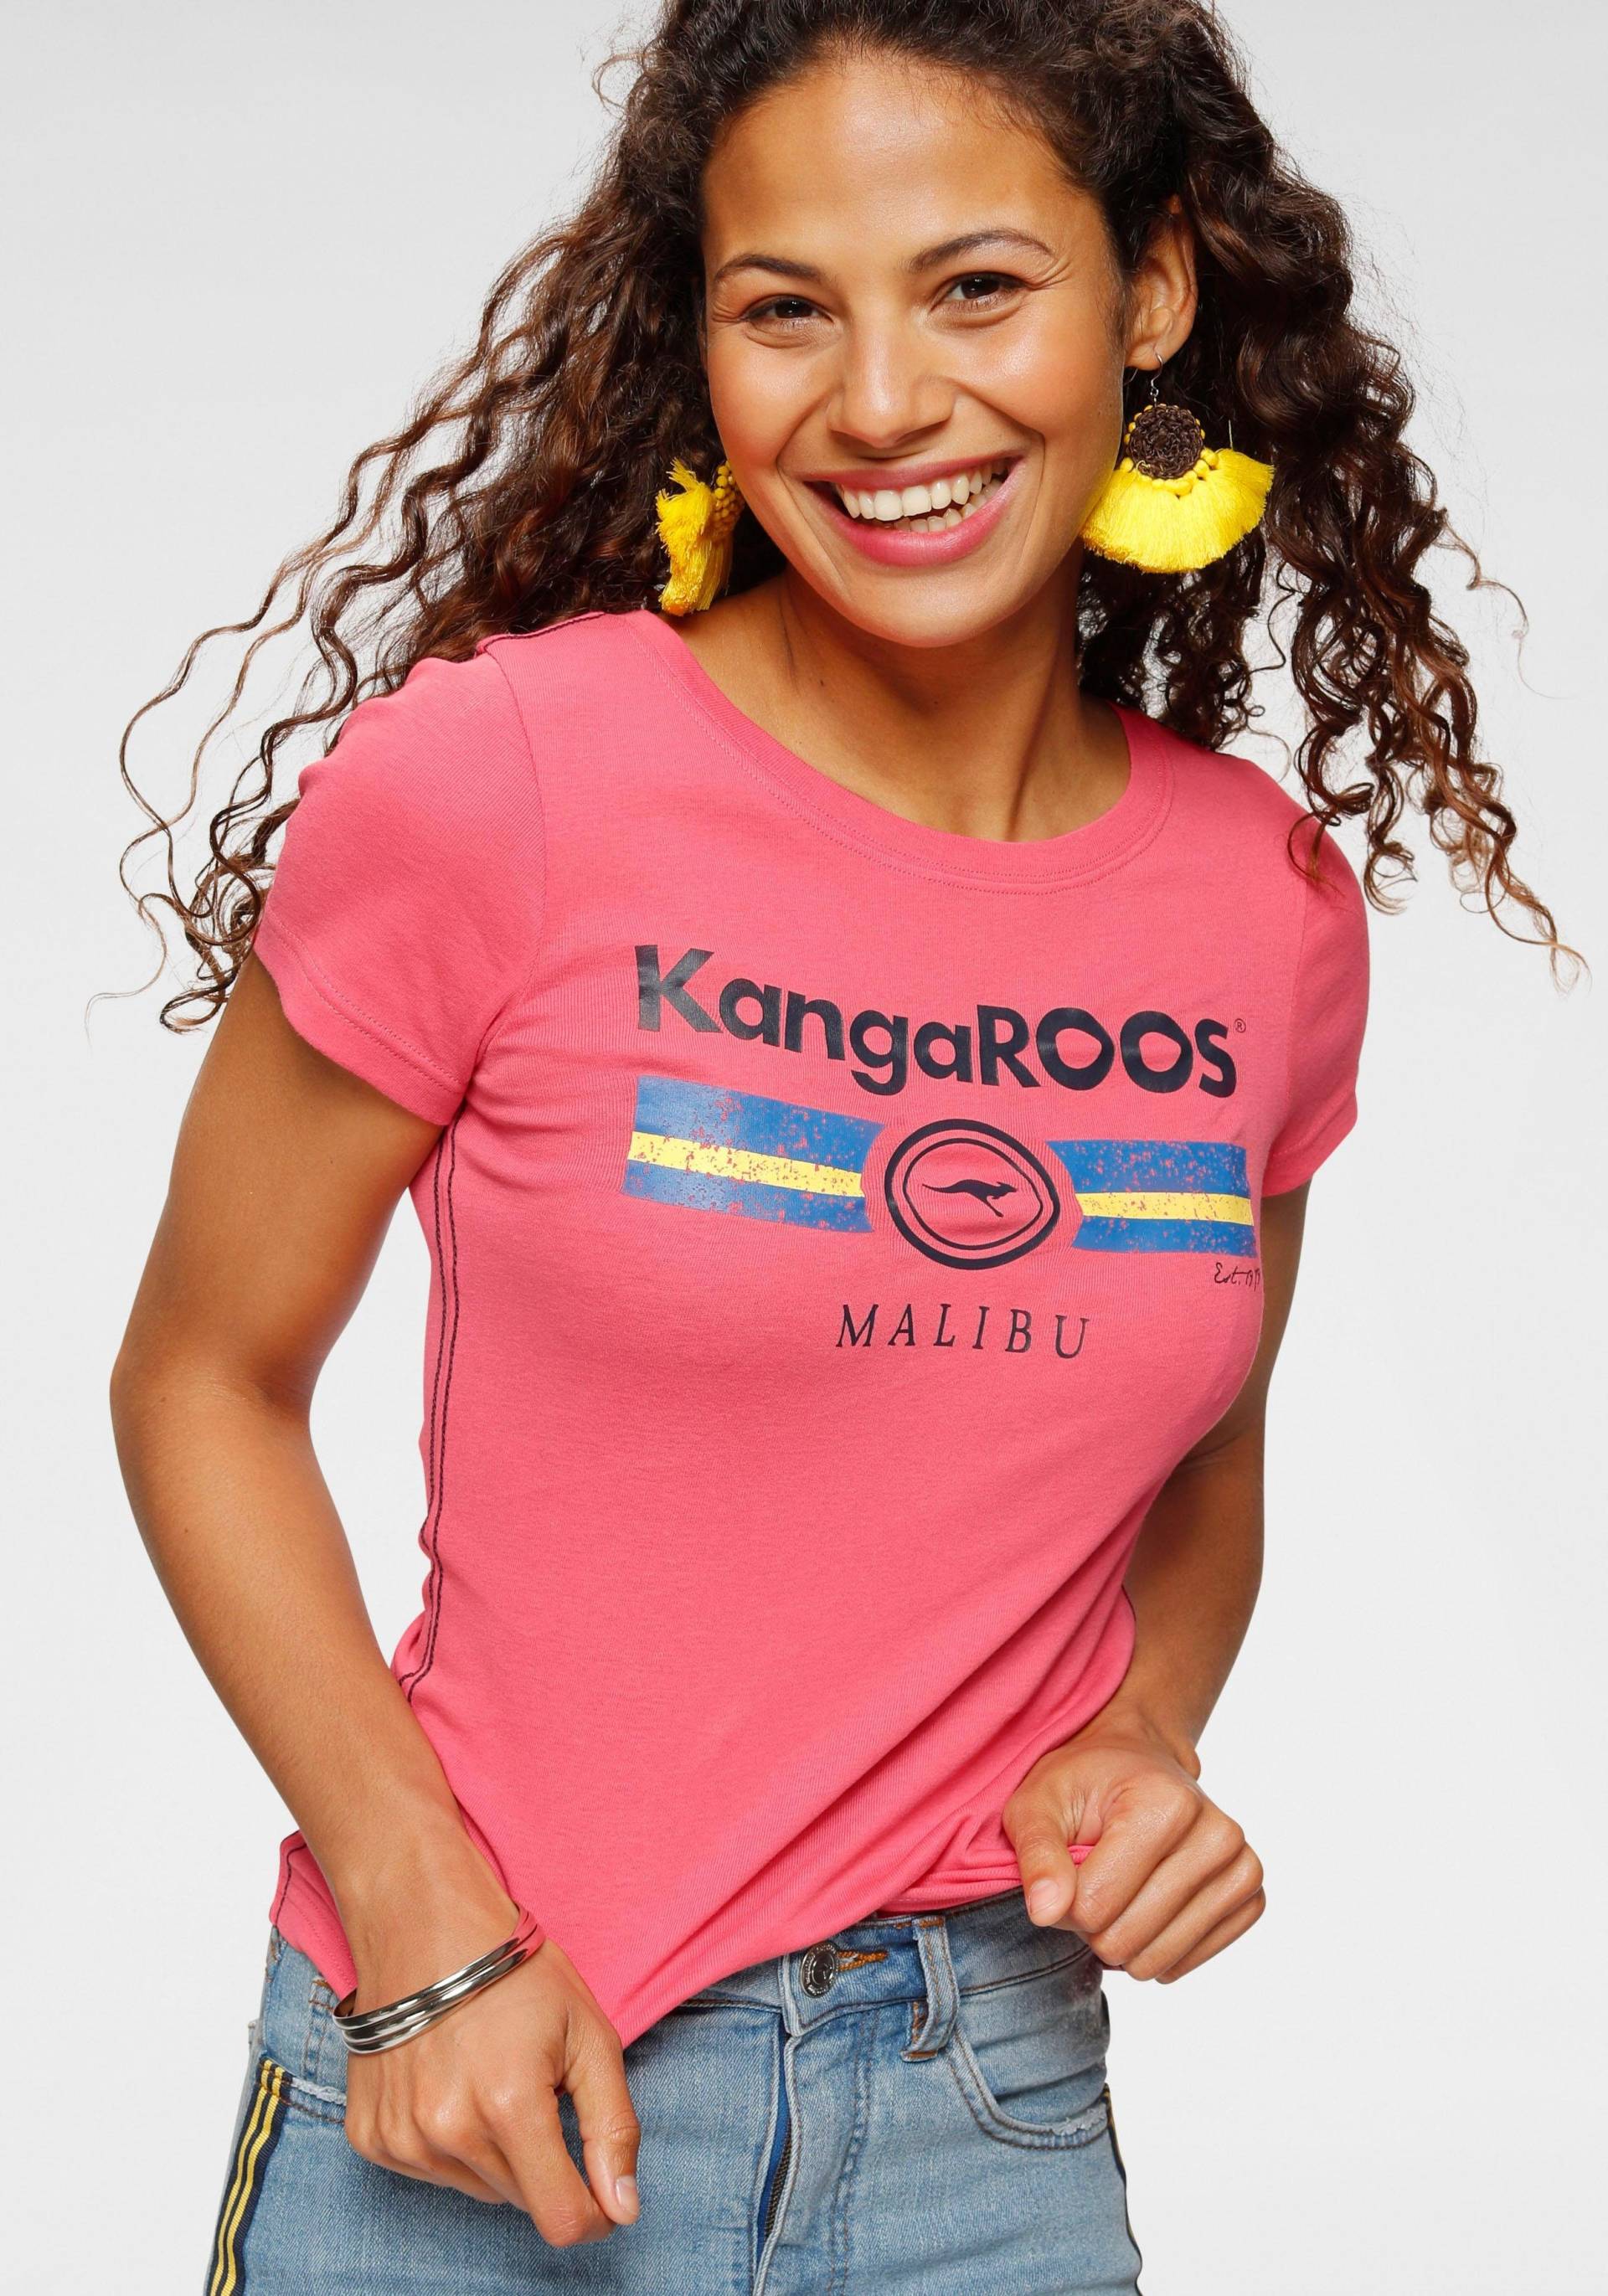 KangaROOS T-Shirt von Kangaroos